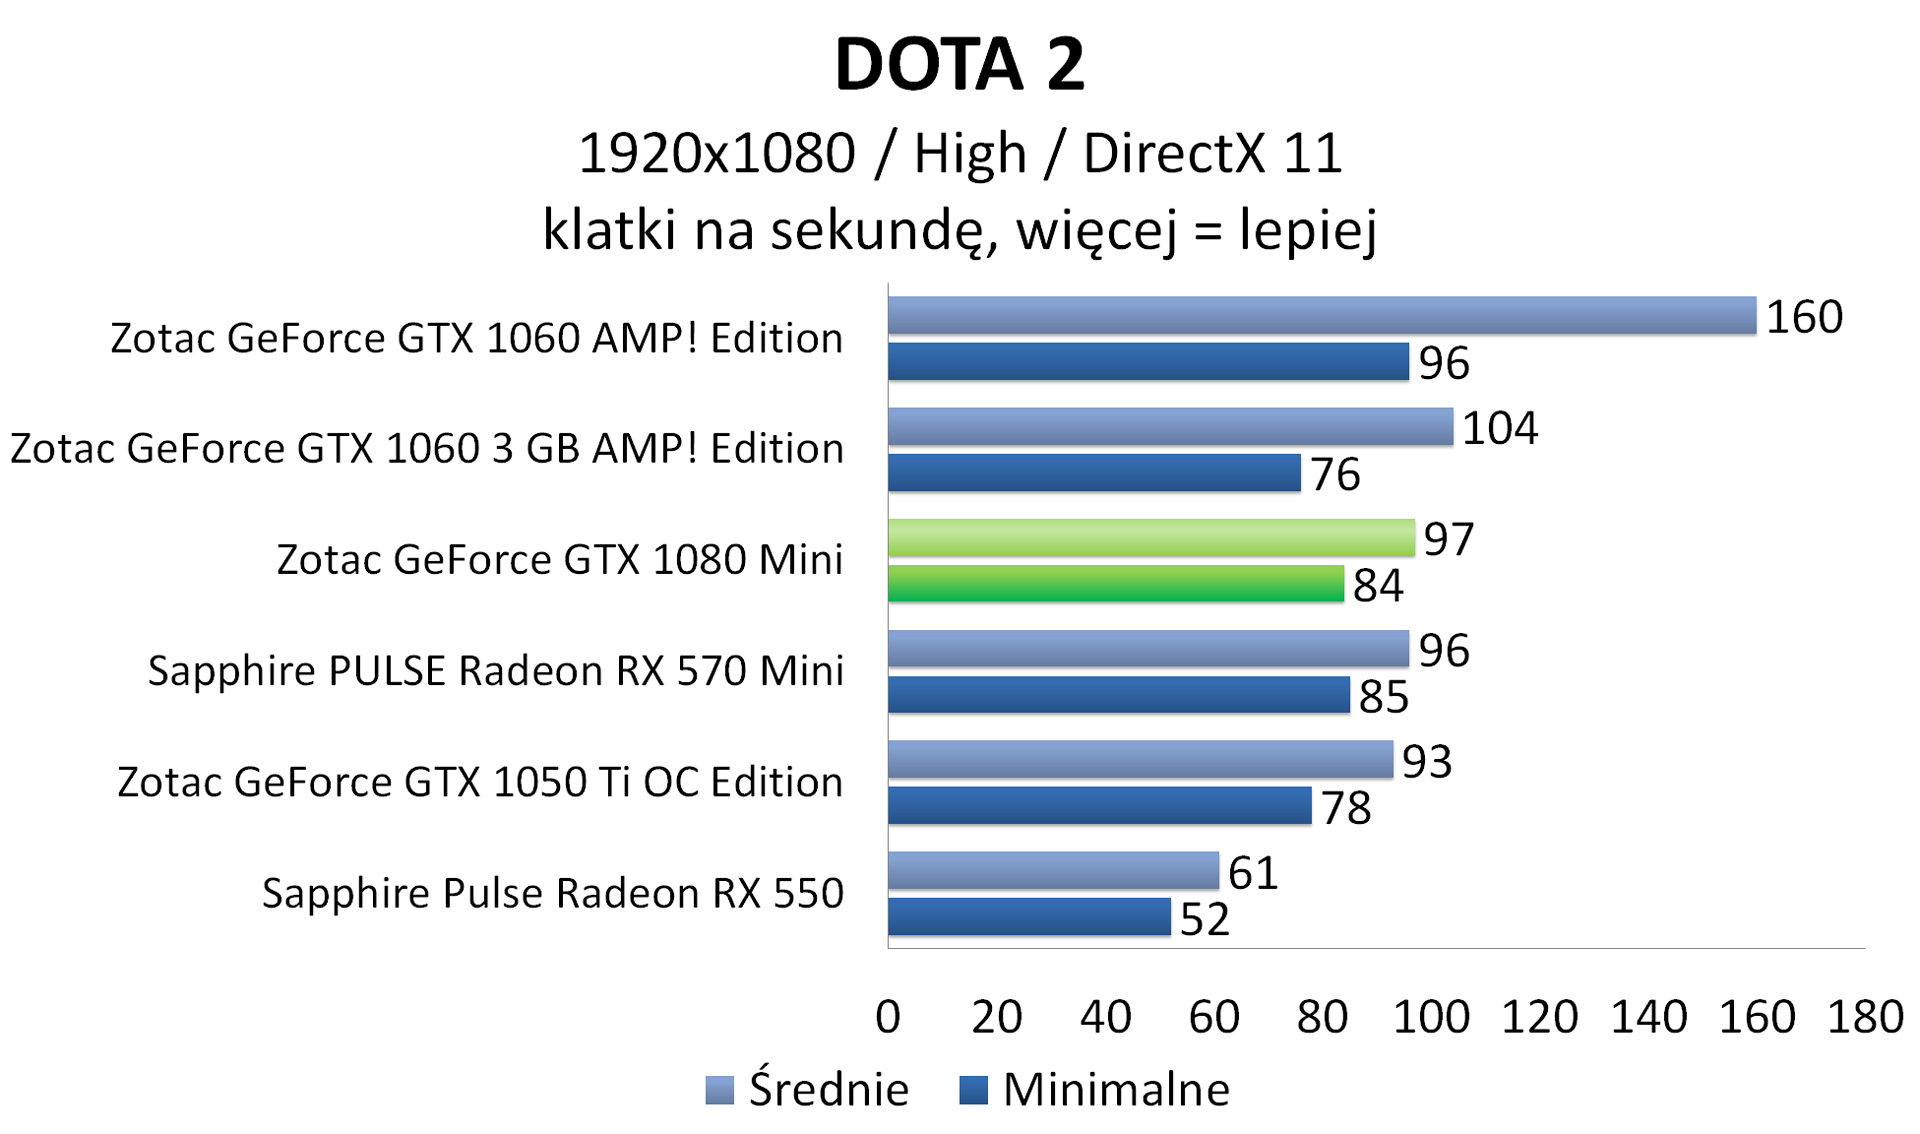 Zotac GeForce GTX 1080 Mini - DOTA 2